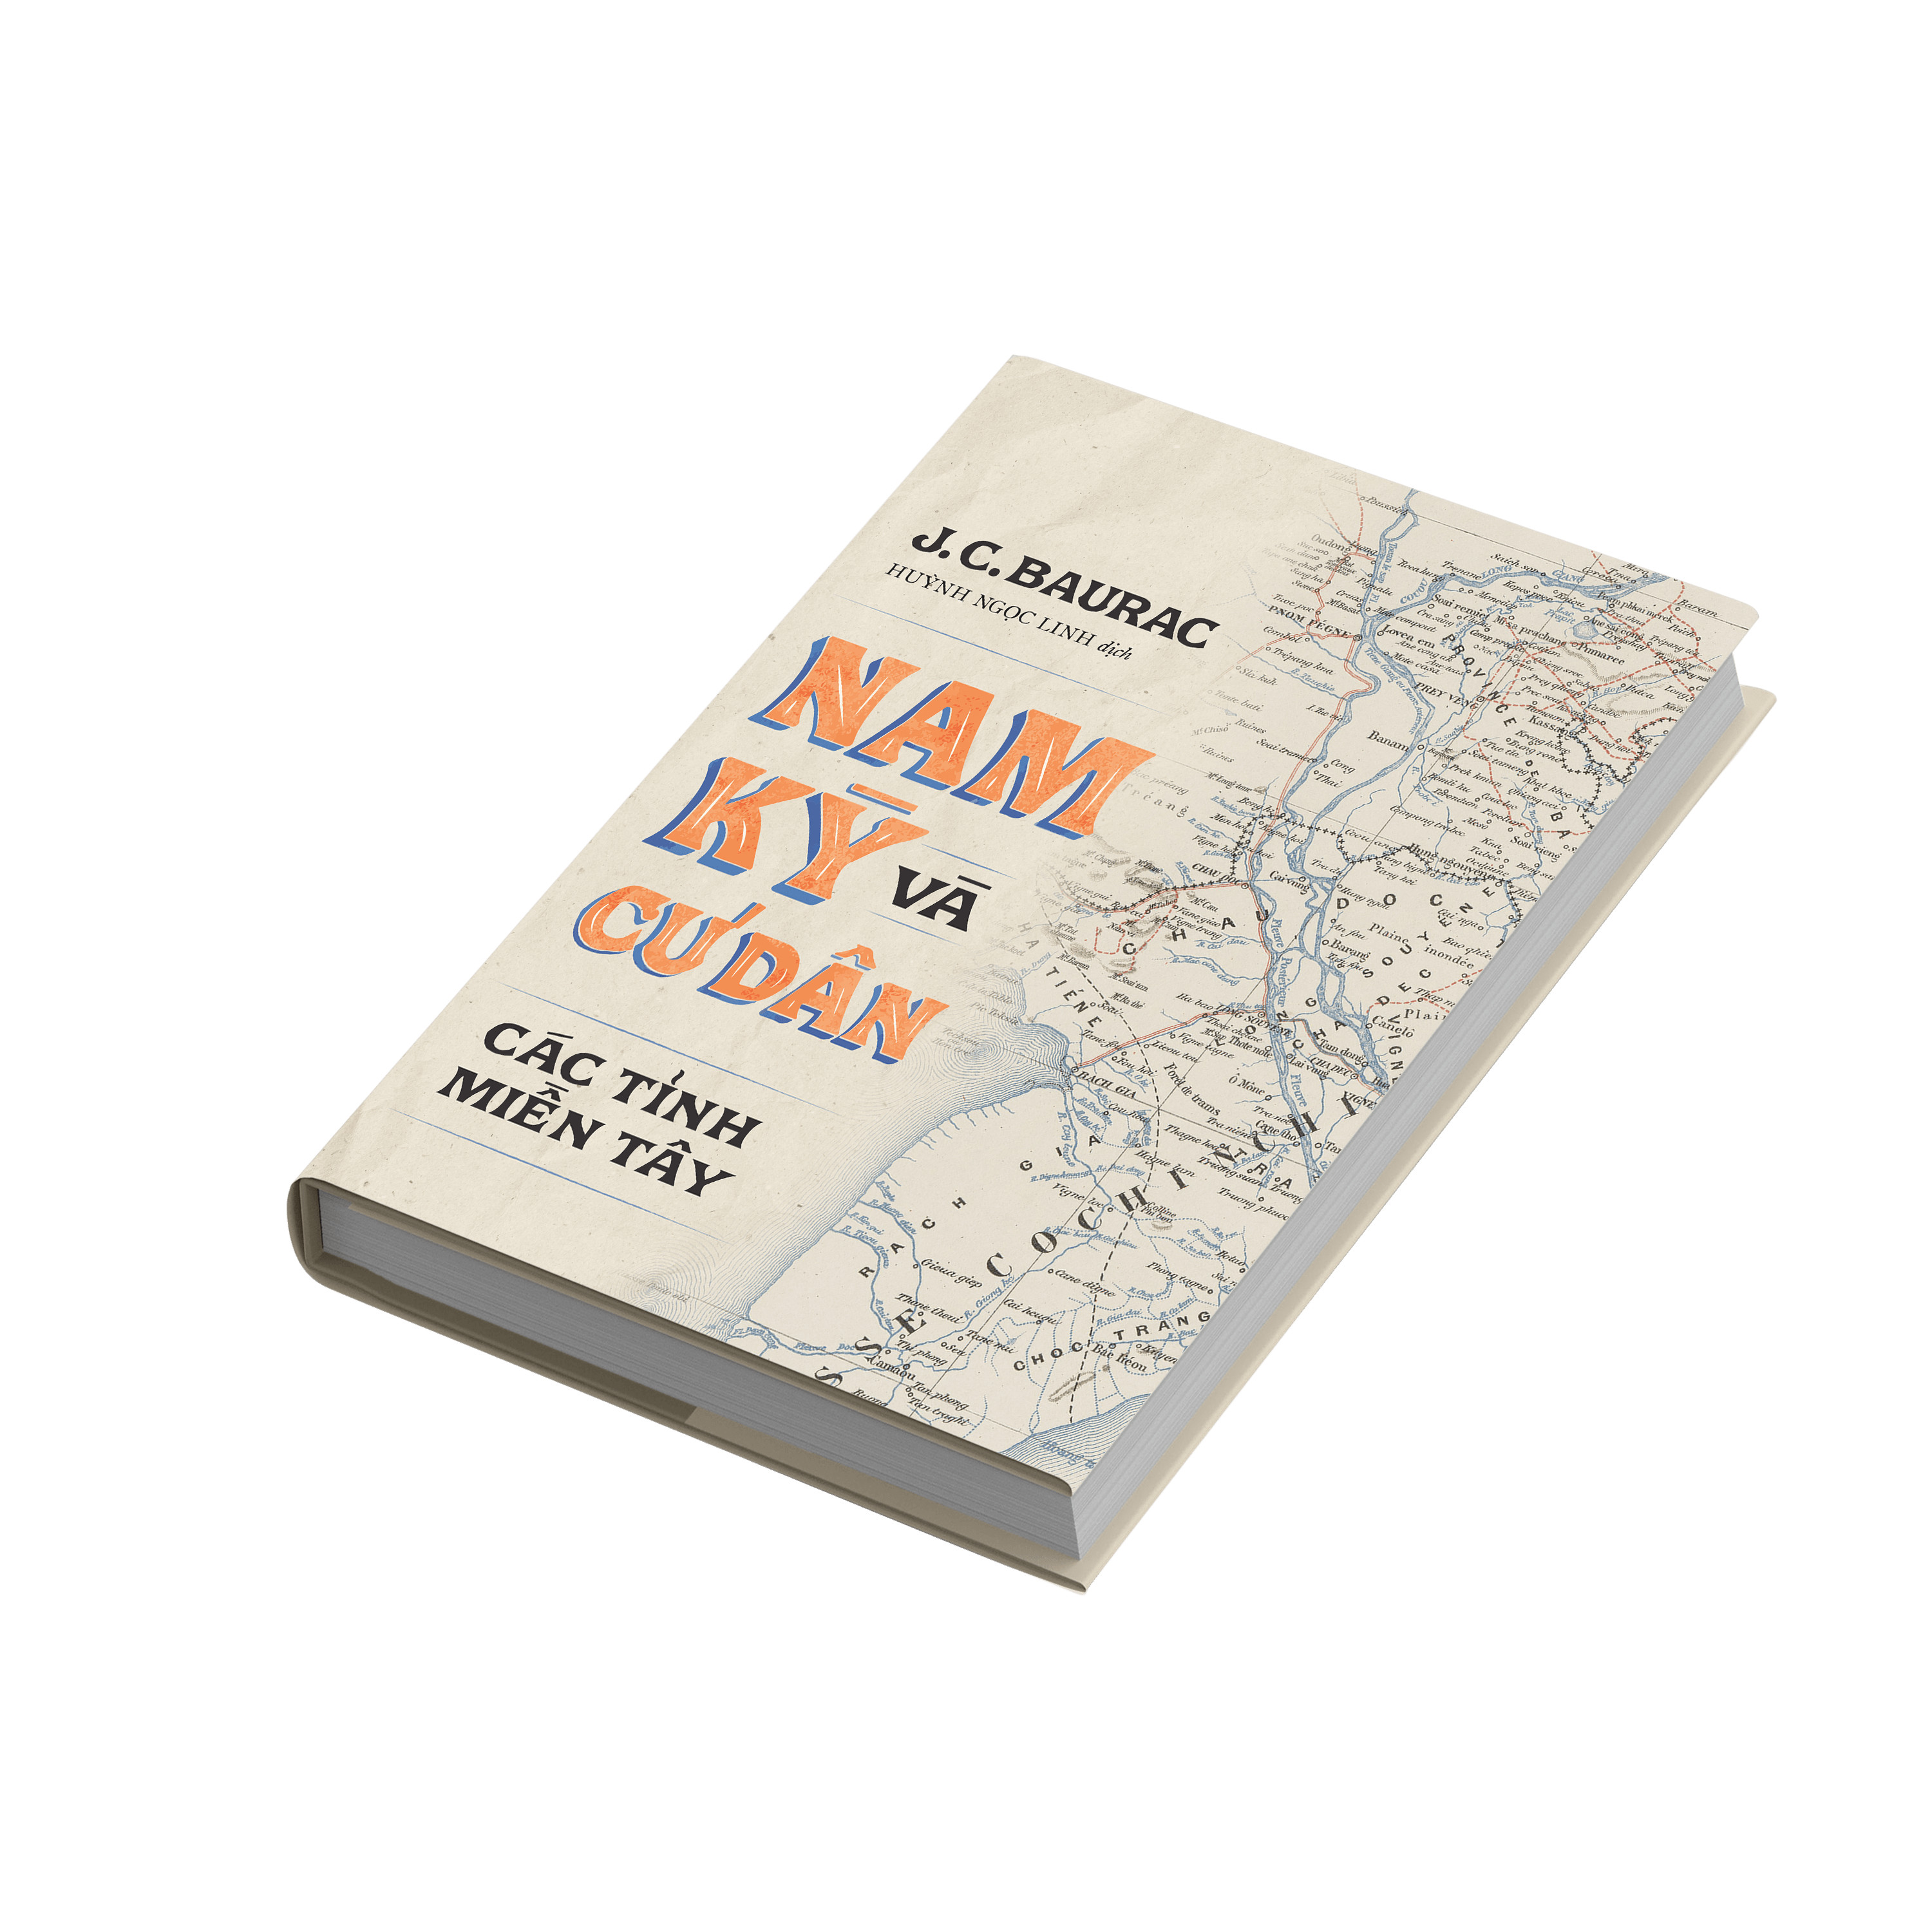 Trạm Đọc Official | Bộ sách Nam Kỳ Và Cư Dân (Tác Phẩm Lịch Sử Ghi Chép Mọi Thứ Về Nam Kỳ )